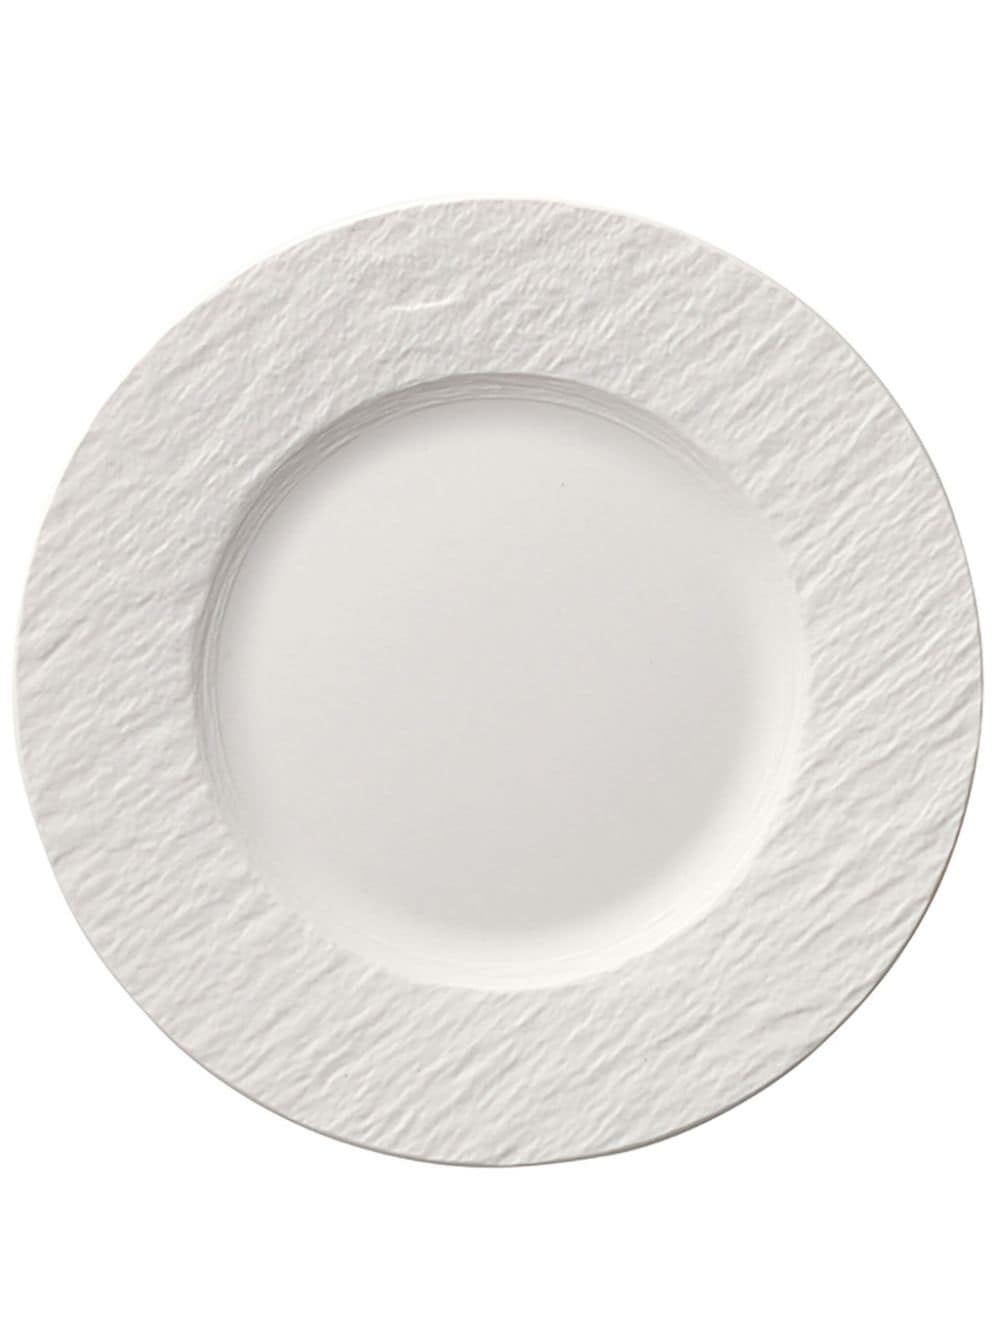 Villeroy & Boch Manufacture Rock round plate - White von Villeroy & Boch